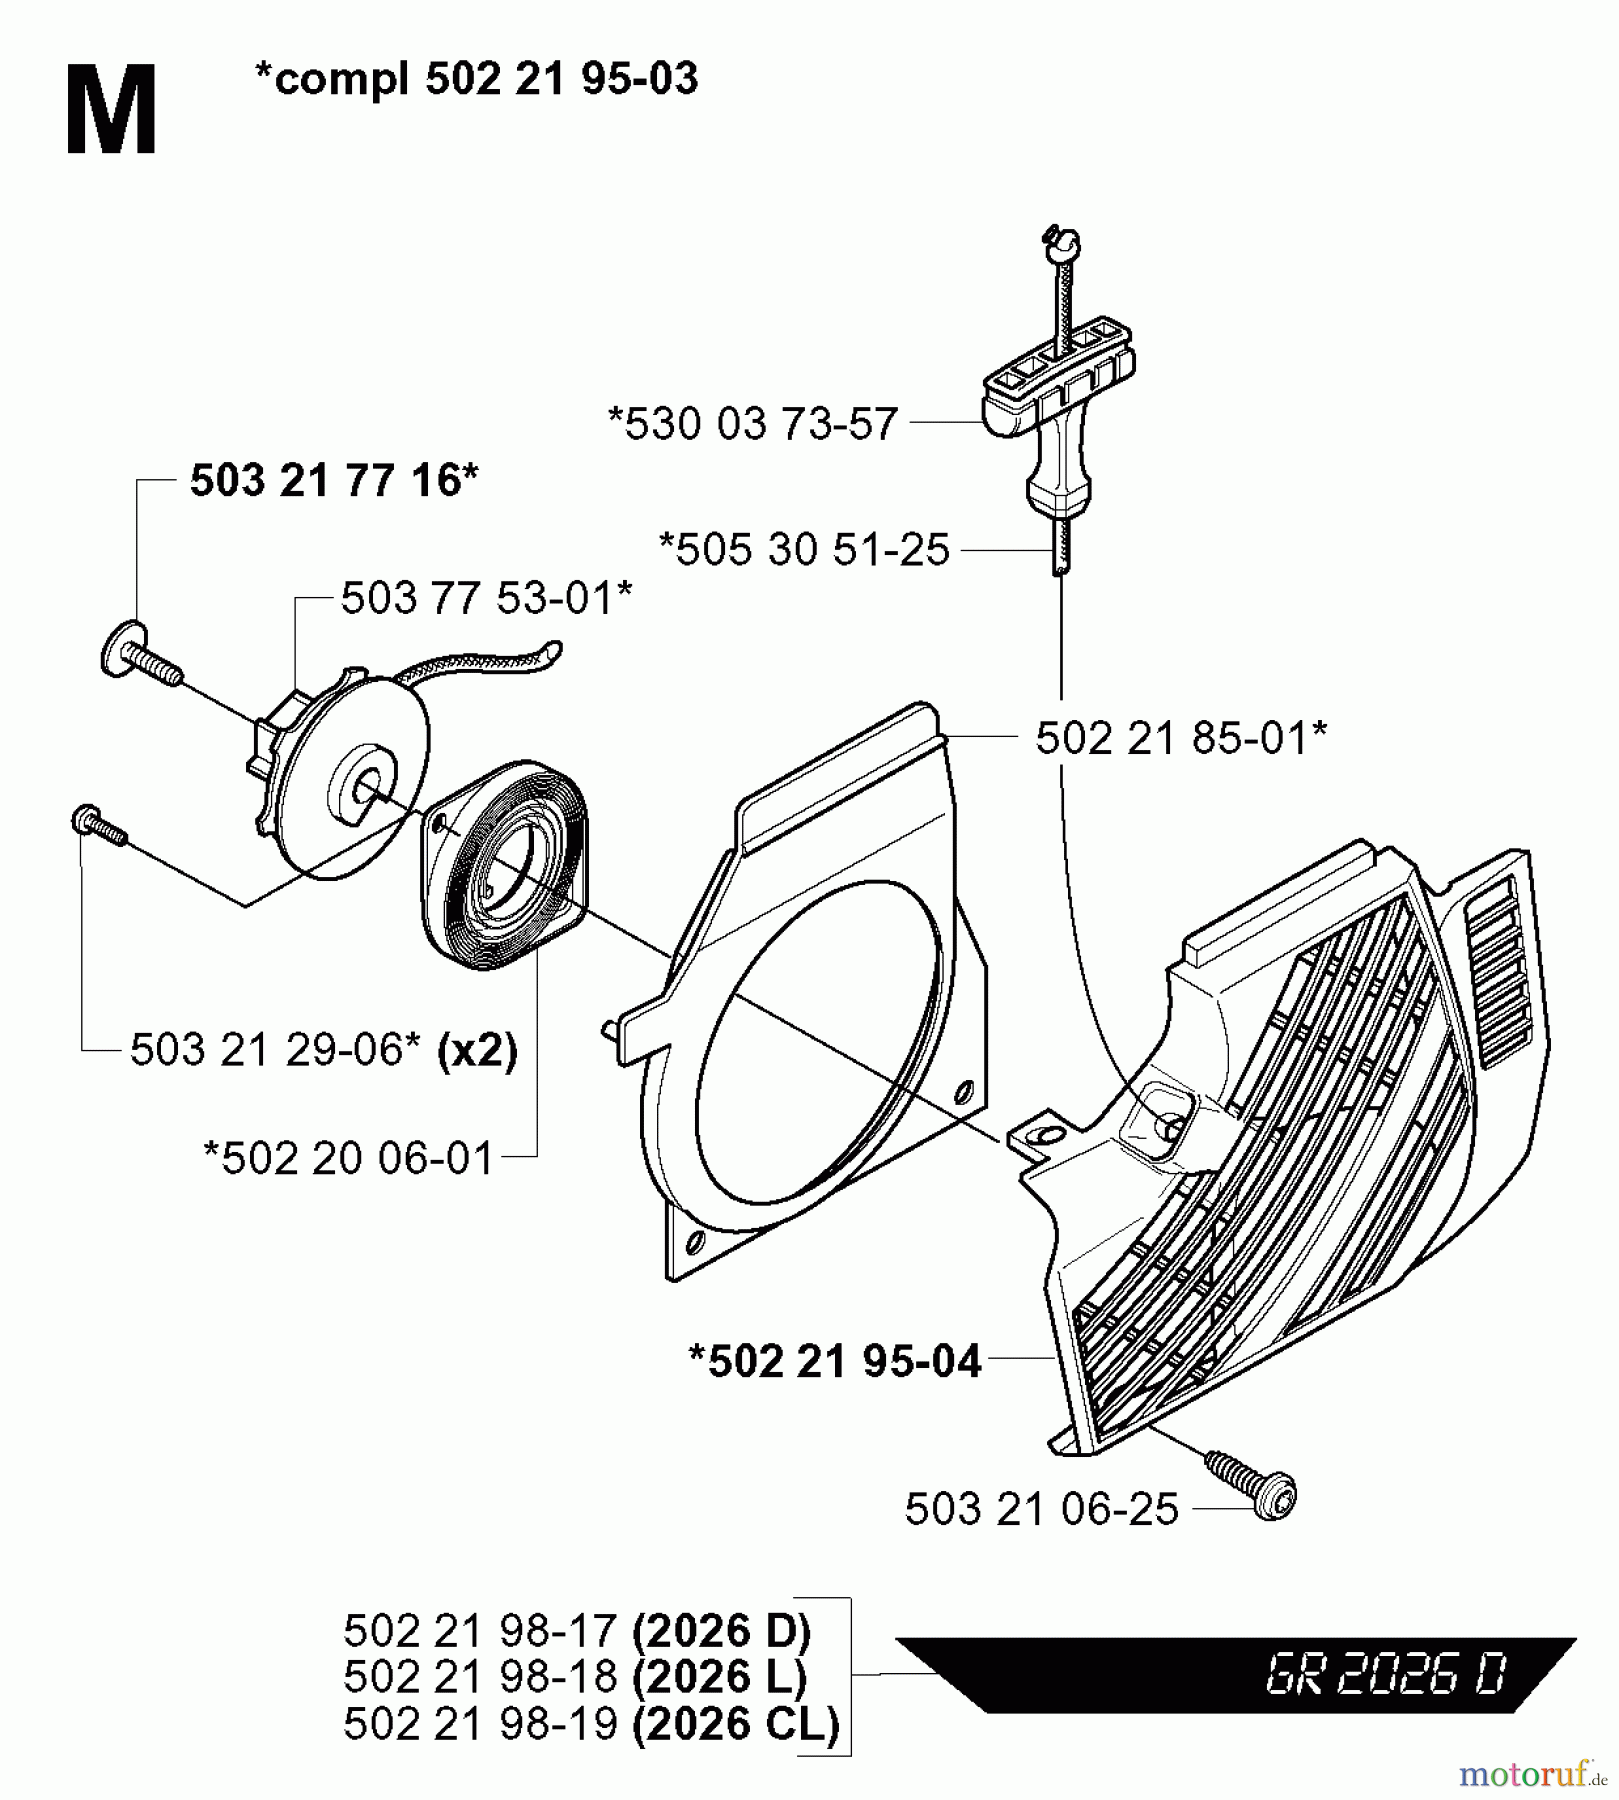  Jonsered Motorsensen, Trimmer GR2026 - Jonsered String/Brush Trimmer (2000-10) STARTER